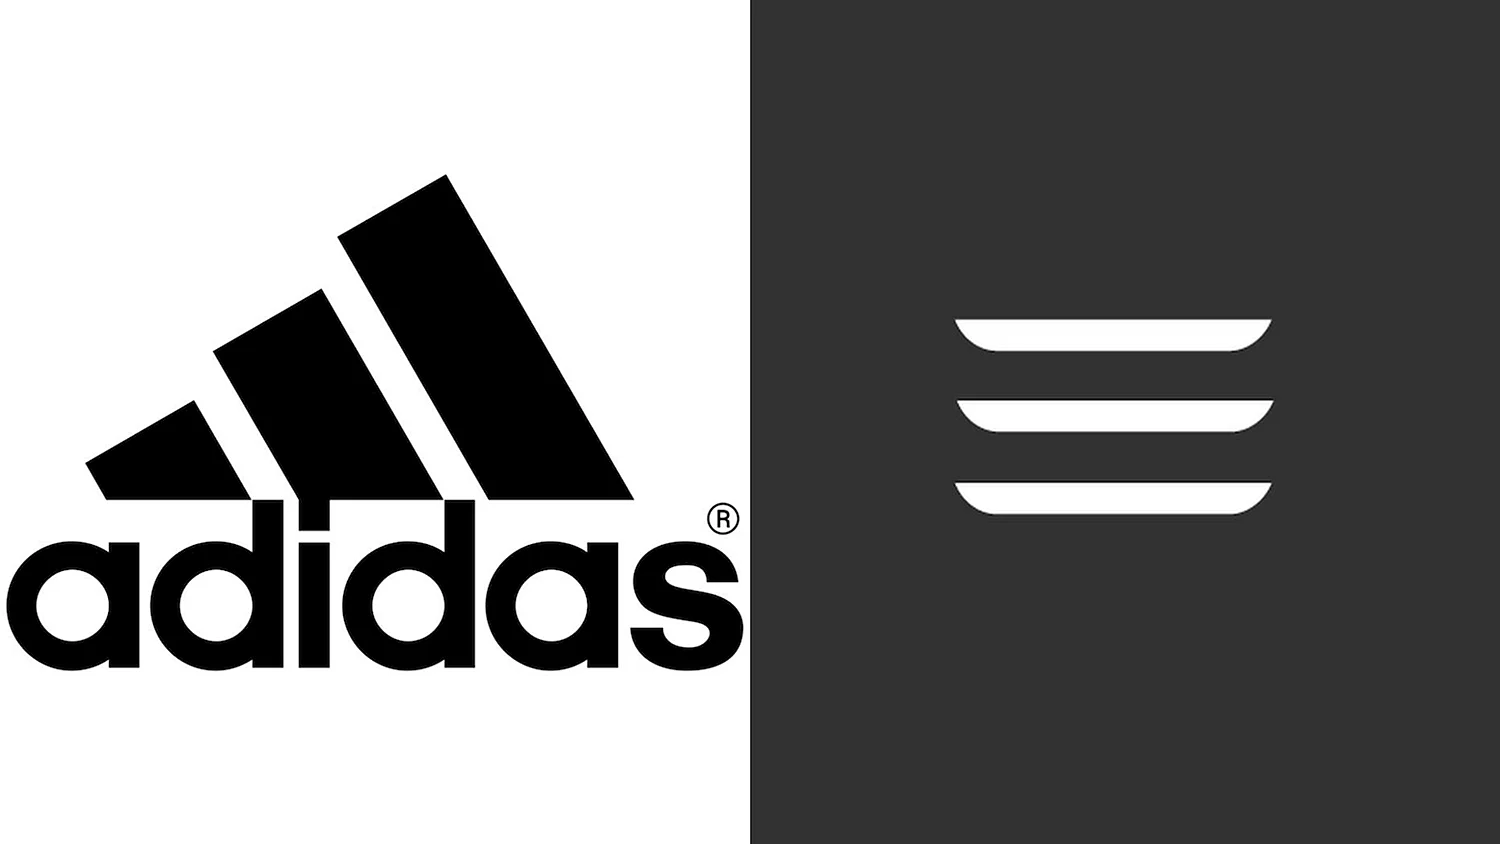 3 Adidas logo